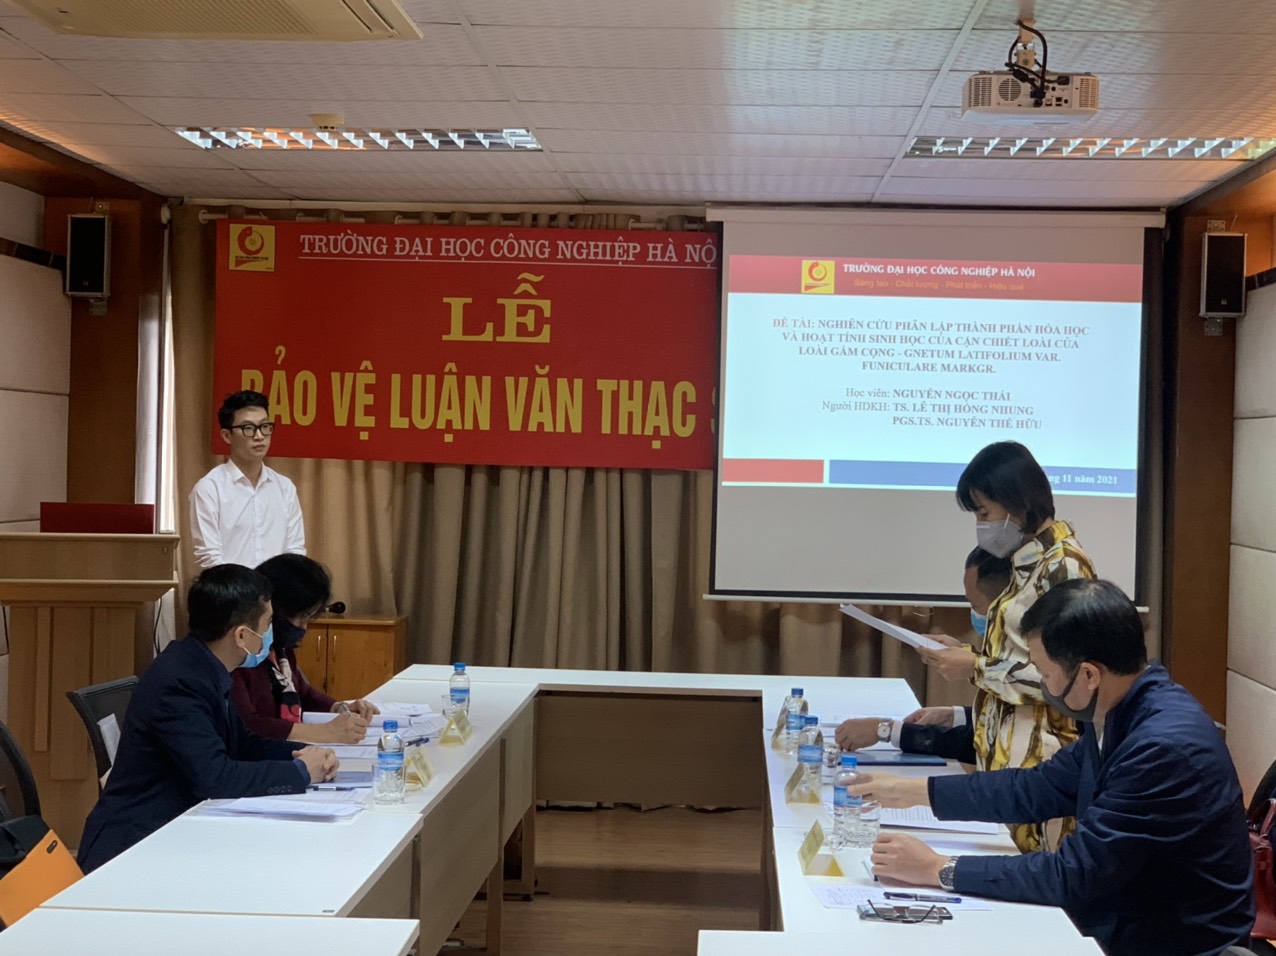 Trường Đại học Công nghiệp Hà Nội, tổ chức bảo vệ luận văn thạc sĩ cho học viên cao học ngành Kỹ thuật Hóa học – khóa 9 đợt 2 (2019-2021).